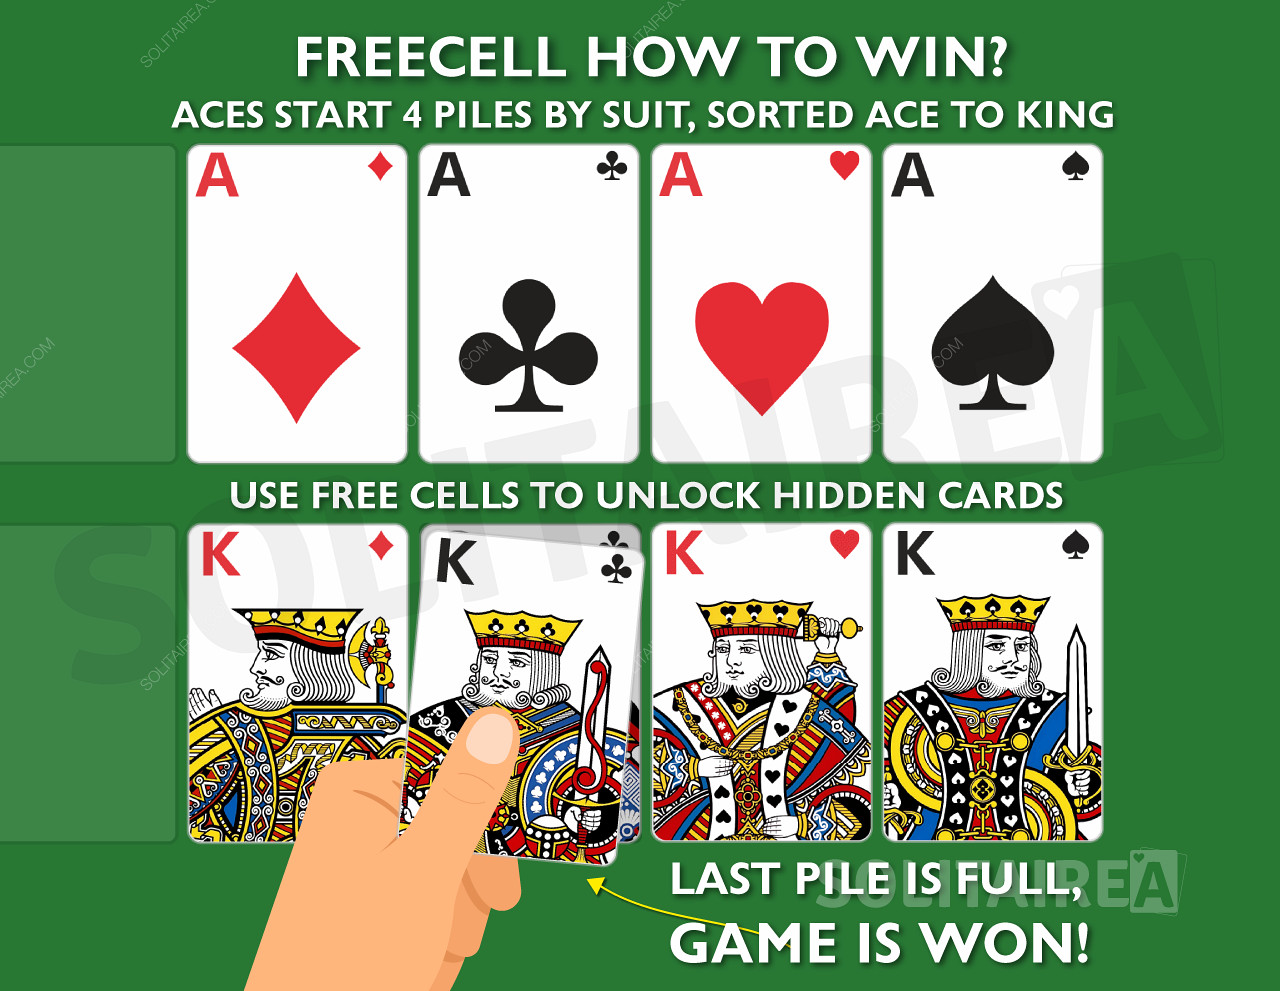 Kuidas mängu võita? Täitke 4 samast mastist koosnevat kaardihunnikut, mis on sorteeritud ässadest kuningateni.